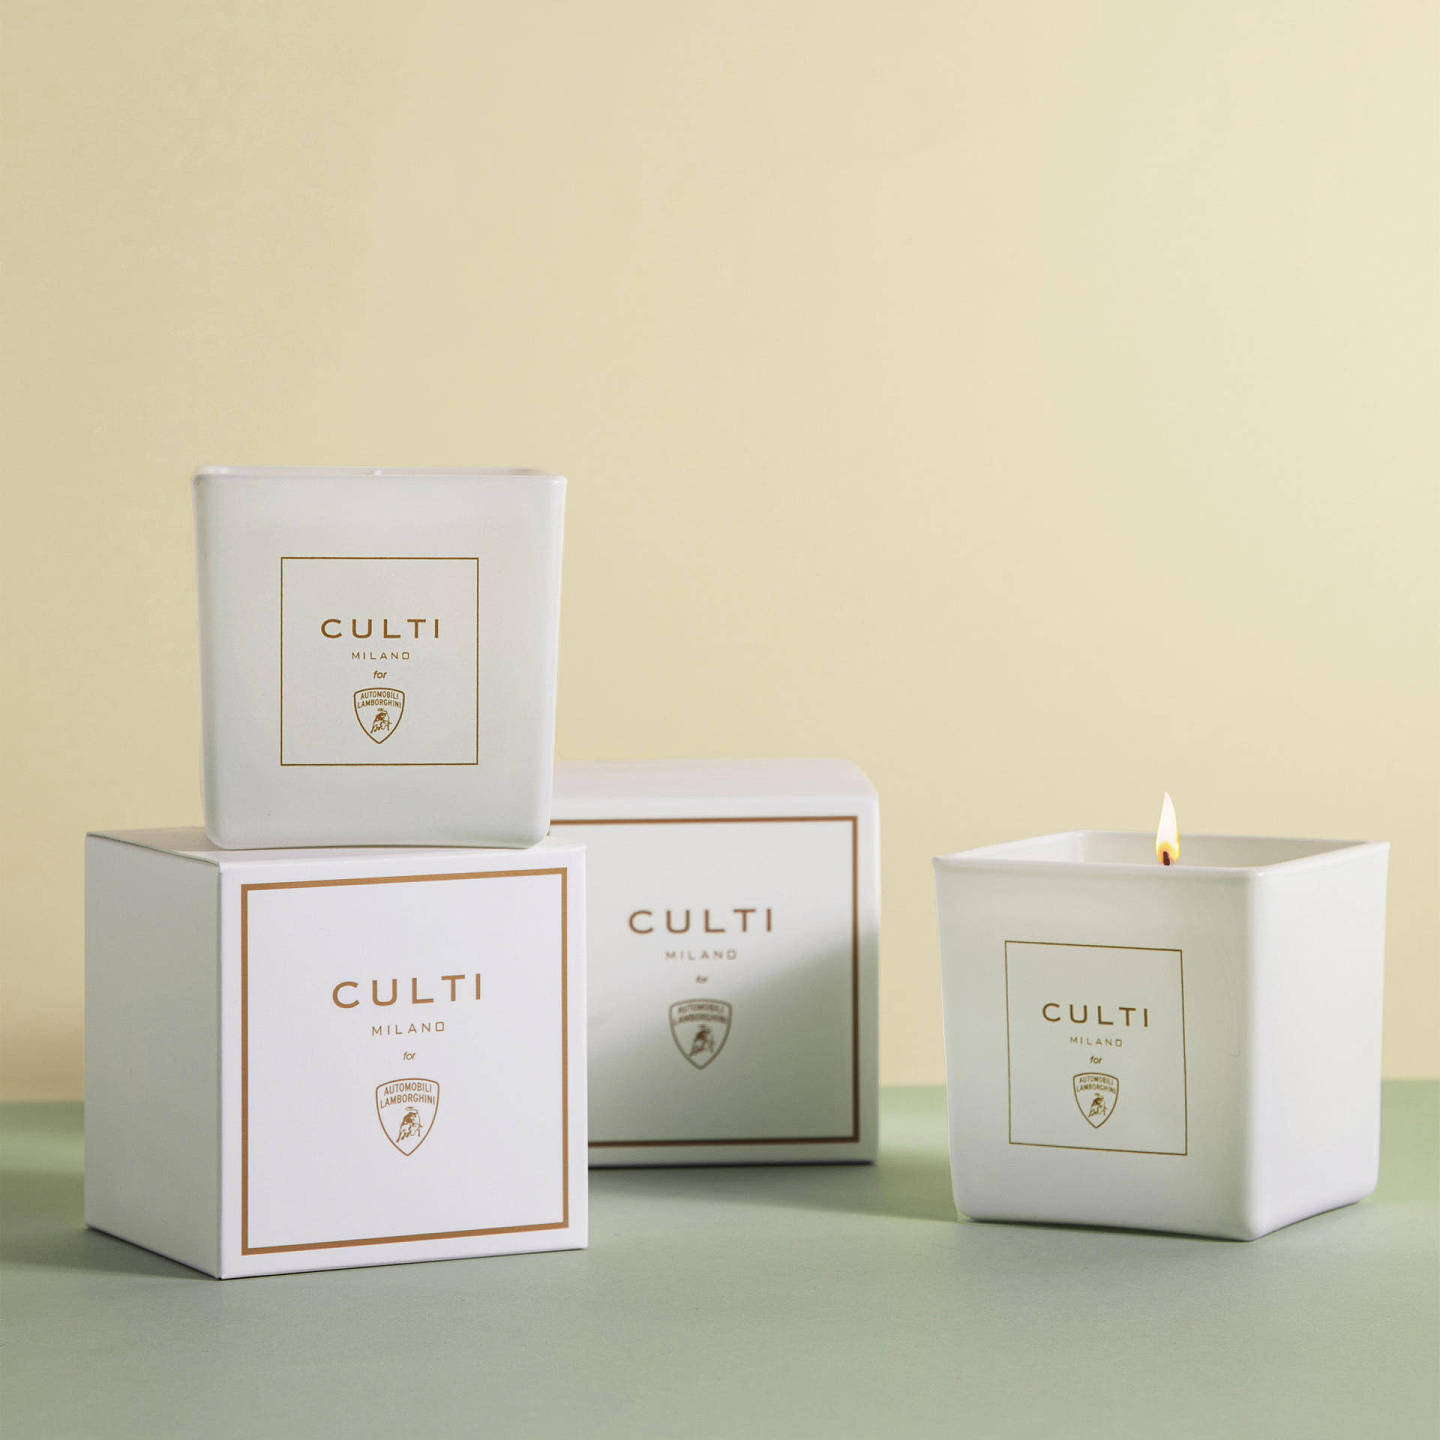 奢侈品媒体|Culti Milano 为兰博基尼打造全新蜡烛产品 |奢华奢侈媒体 - 2